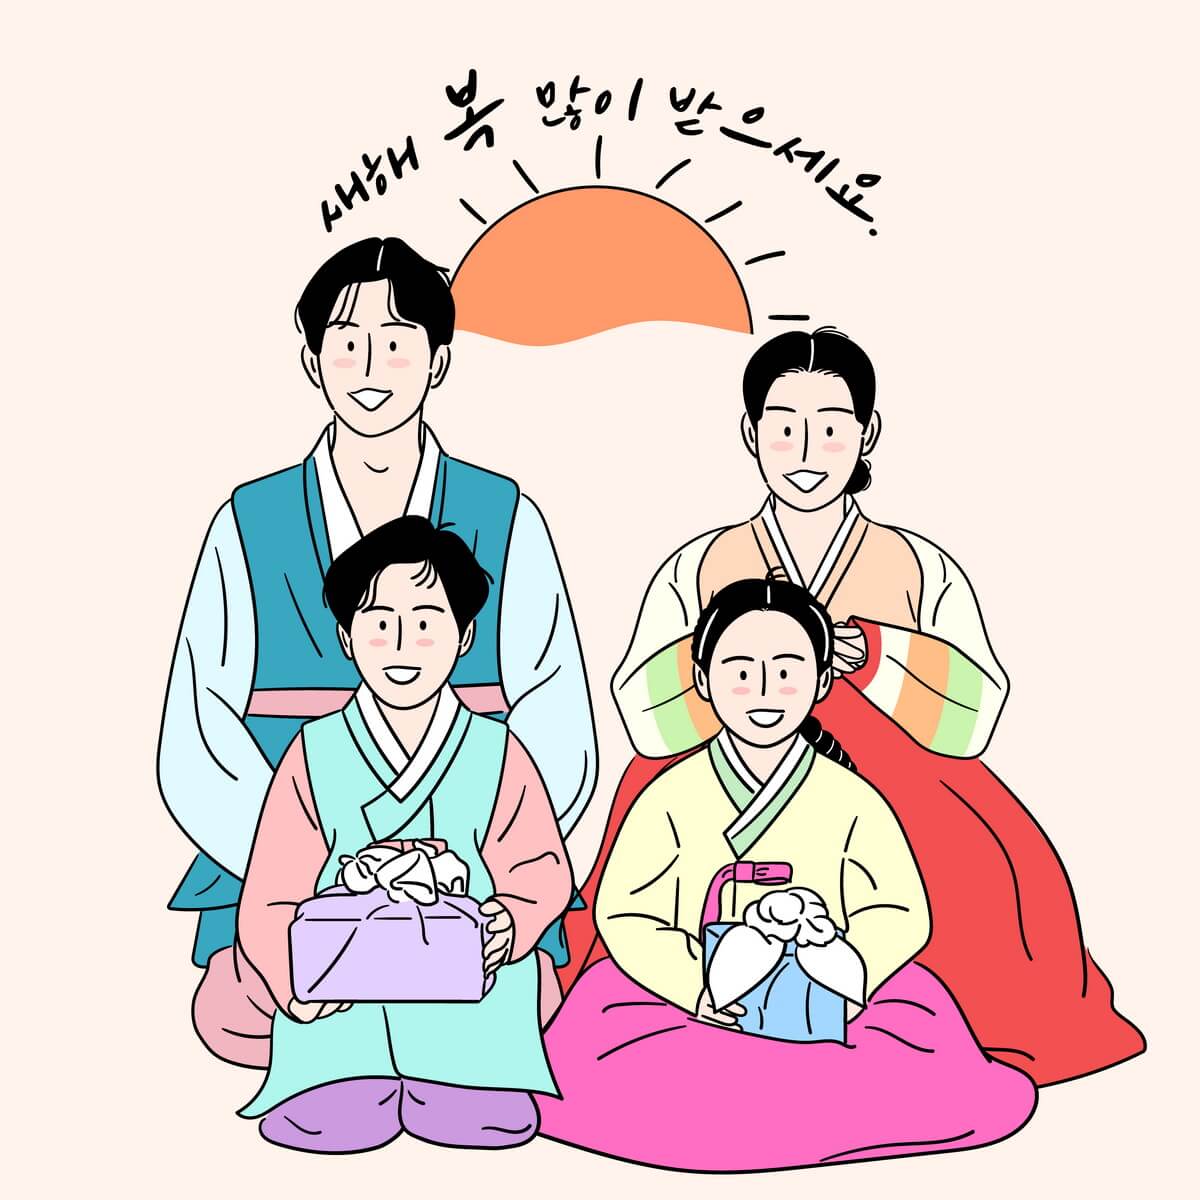 พฤติกรรมการชมซีรี่ย์เกาหลี “ละครโทรทัศน์เกาหลี” ของวัยรุ่นไทย